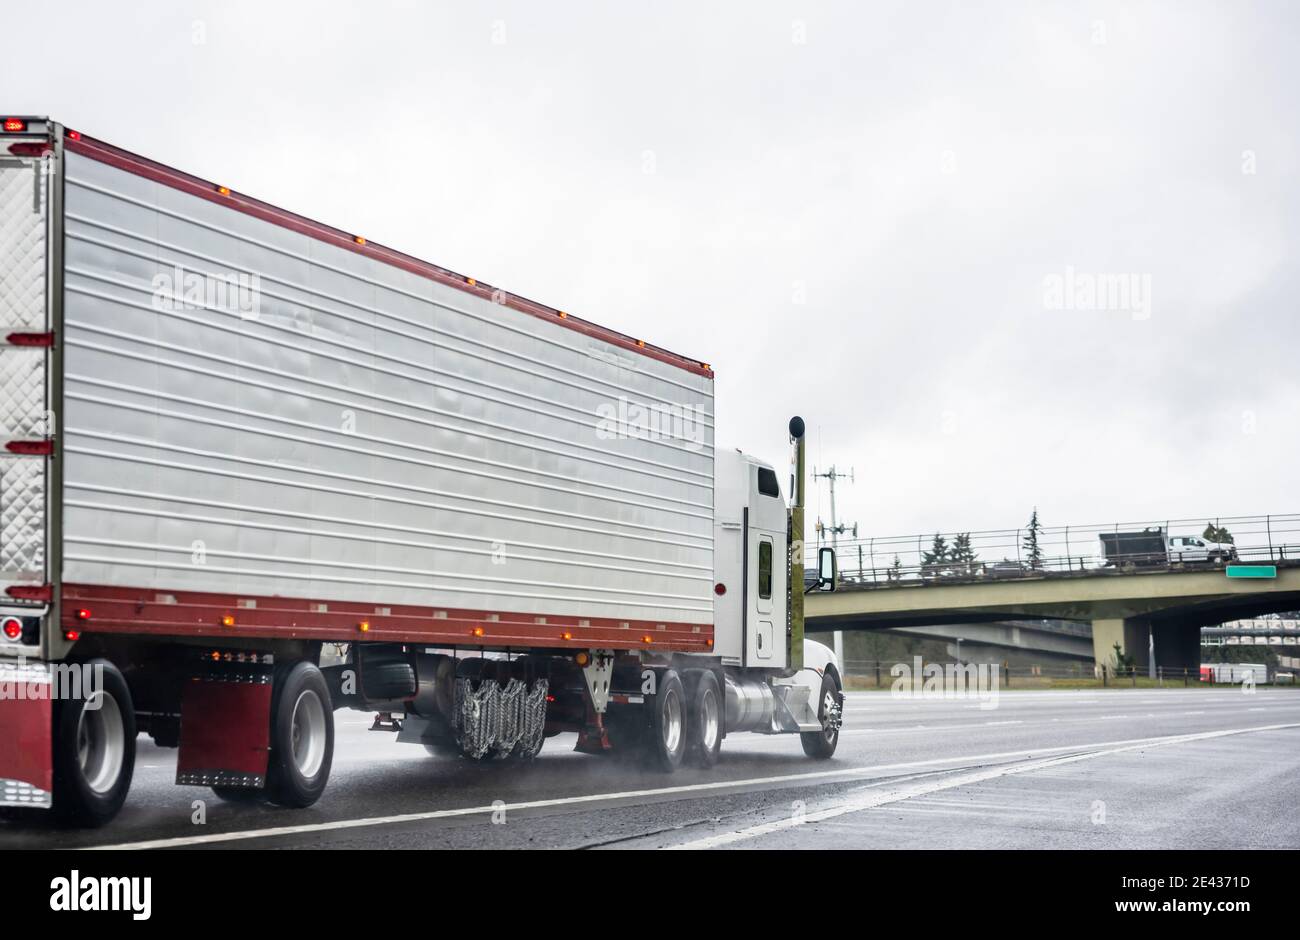 Big Rig stilvolle Industrie weißen Semi-Truck mit eingeschaltet Scheinwerfer, die Ladung in Kühlraum-Sattelauflieger transportieren, die auf dem laufen Dämmerung nasse Straße Stockfoto